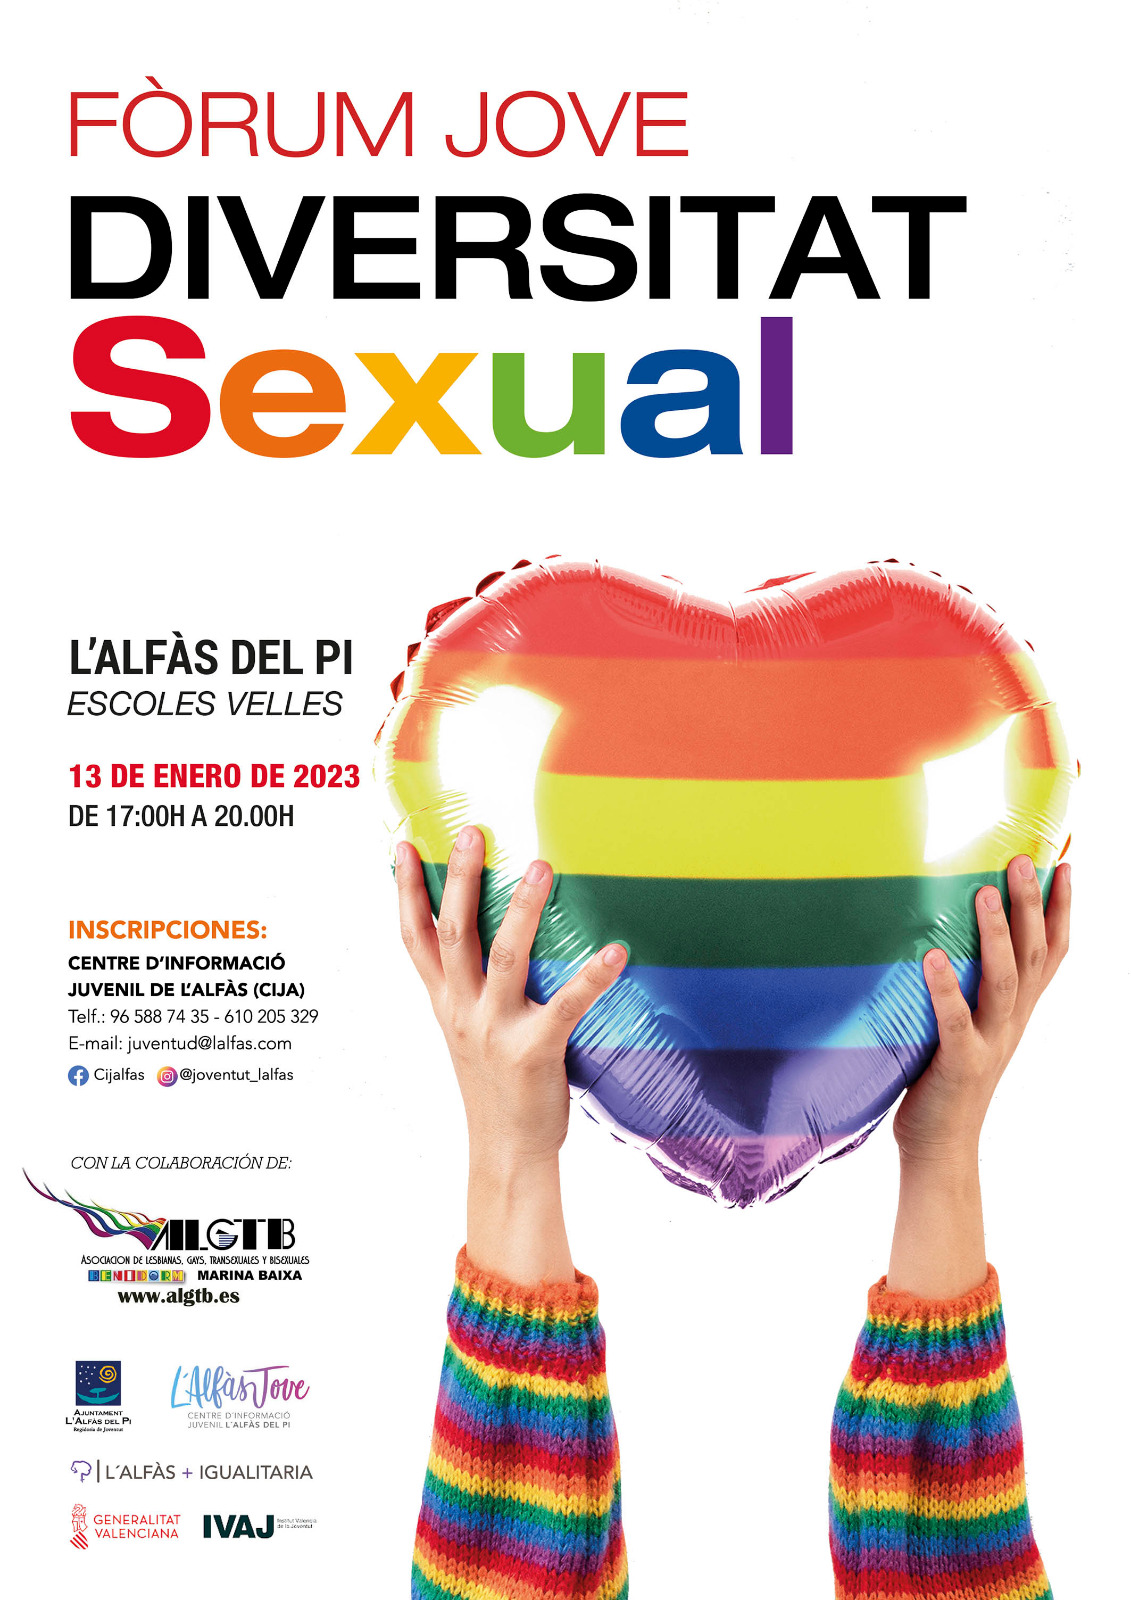 Juventud_cartel-foro-jove-diversidad-sexual